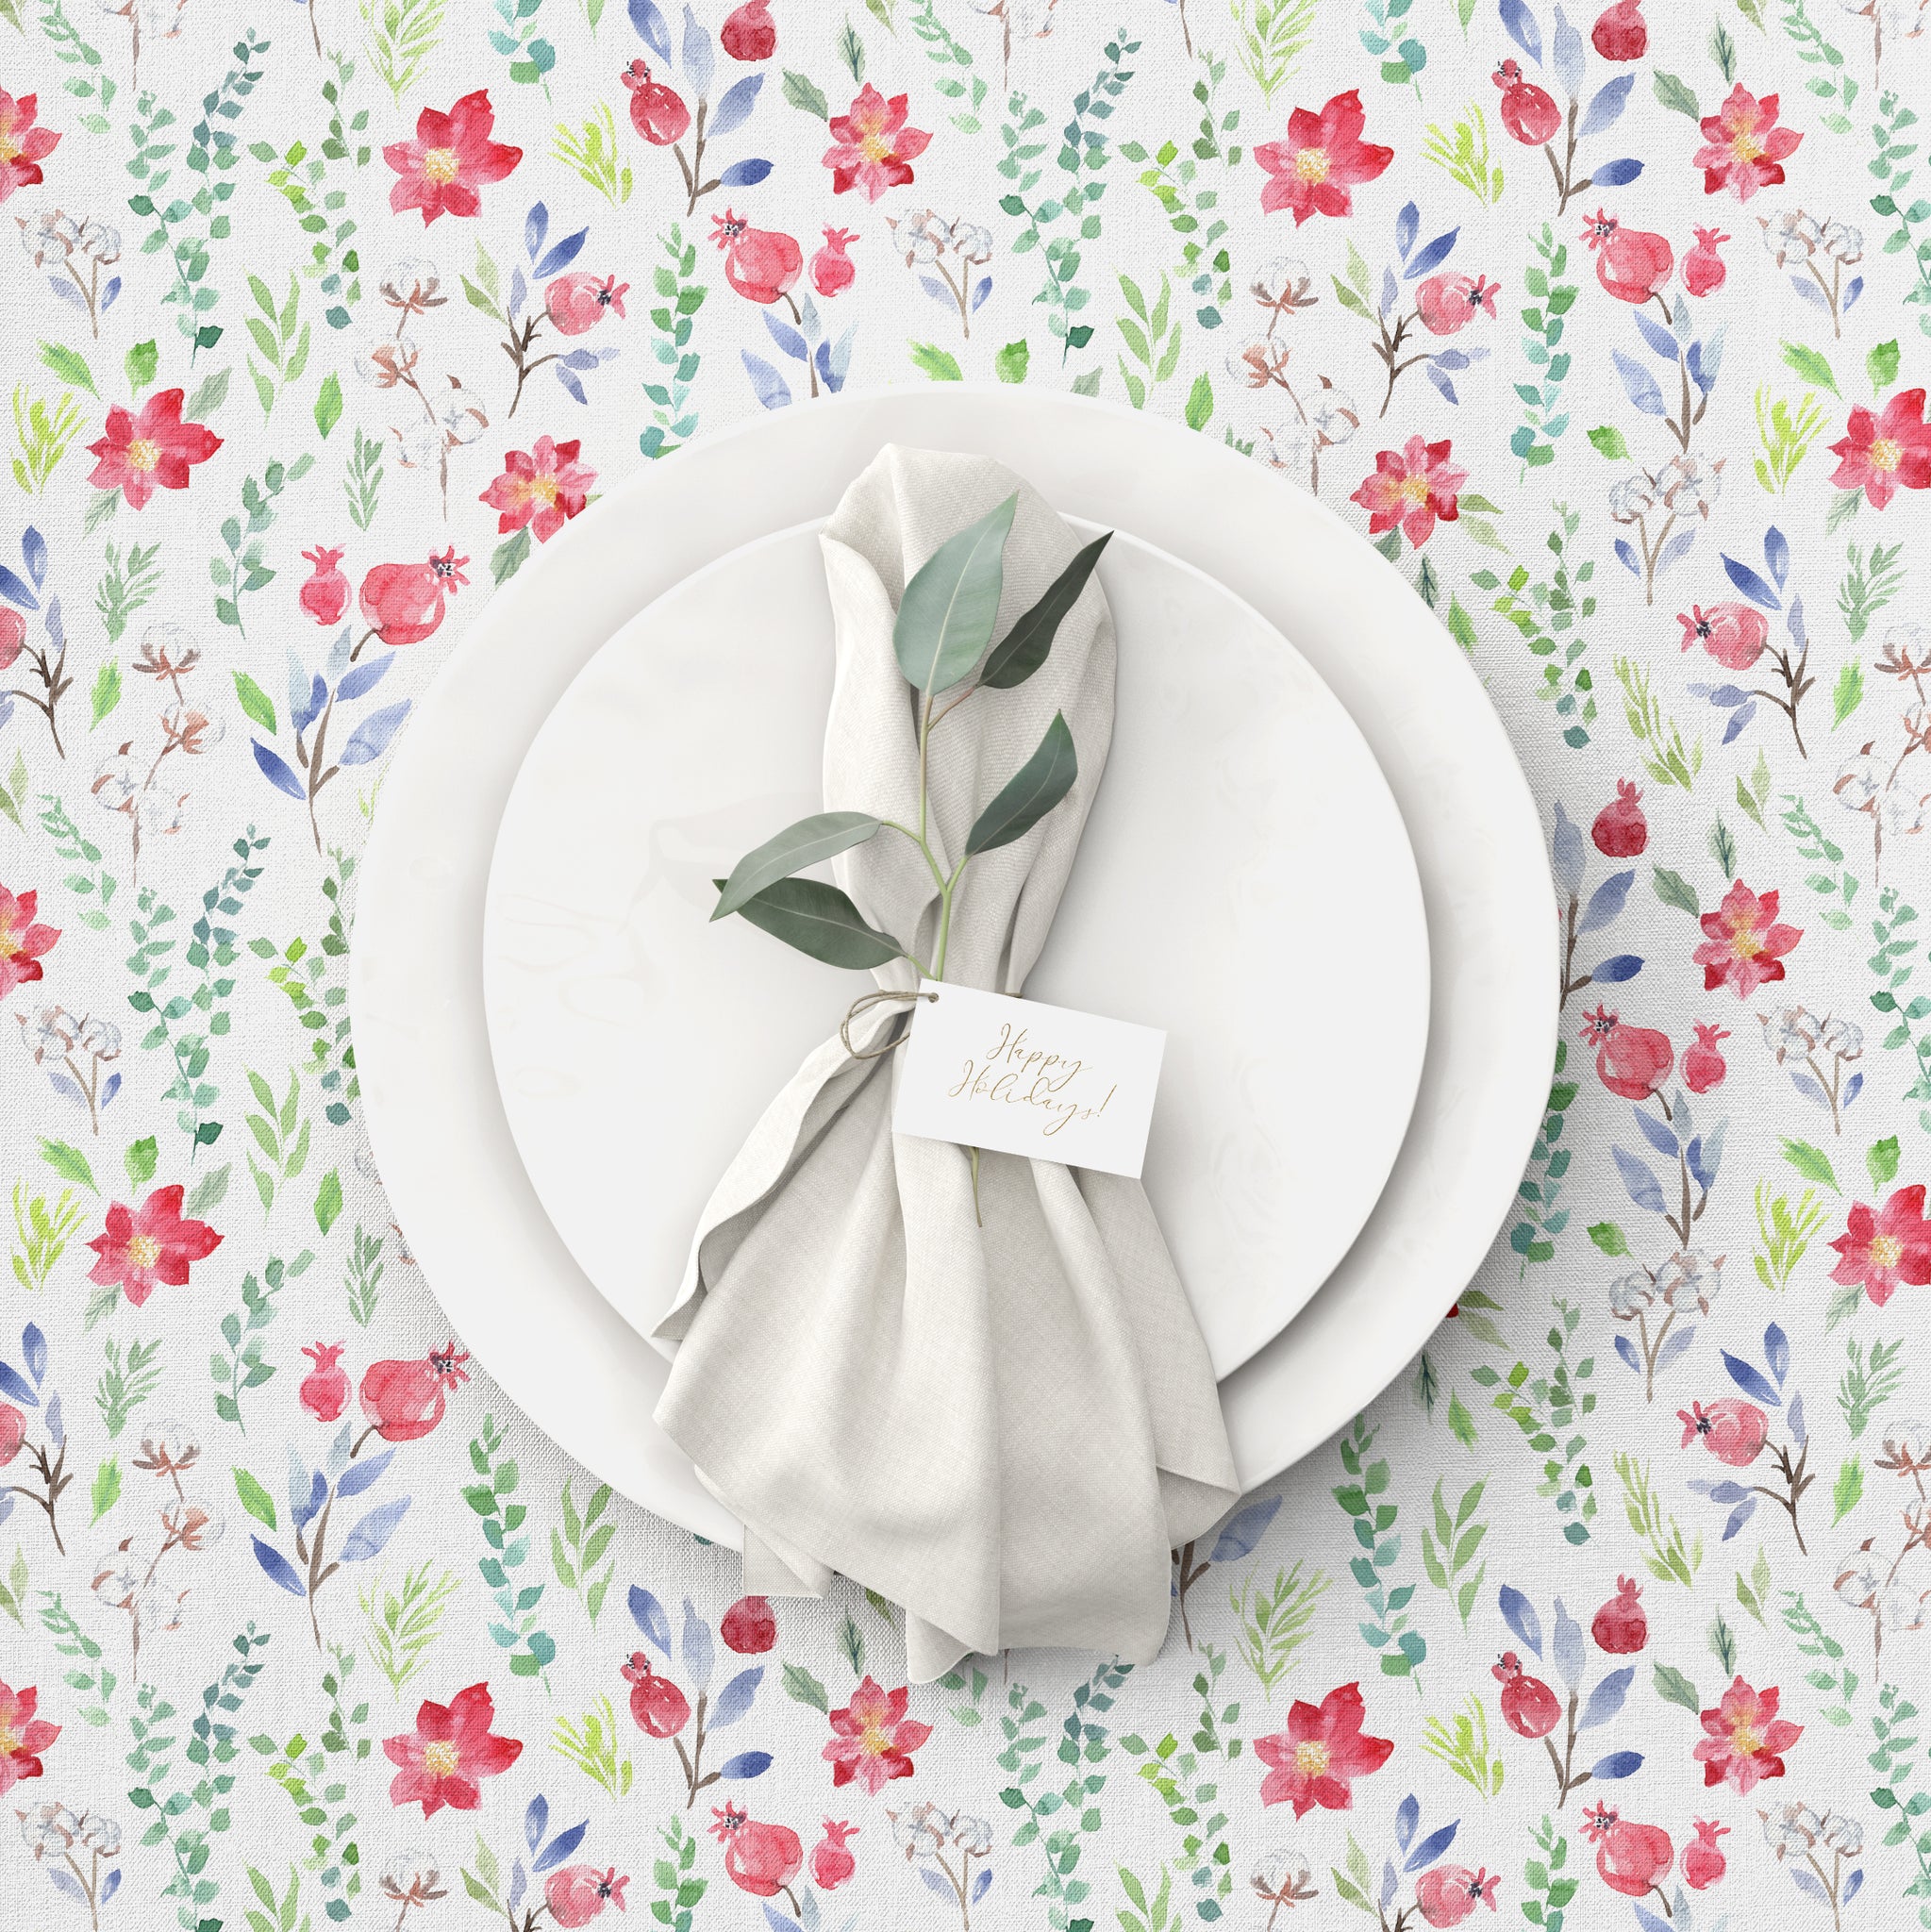 Christmas gift for mom, winter botanical tea towel by Darya Karenski